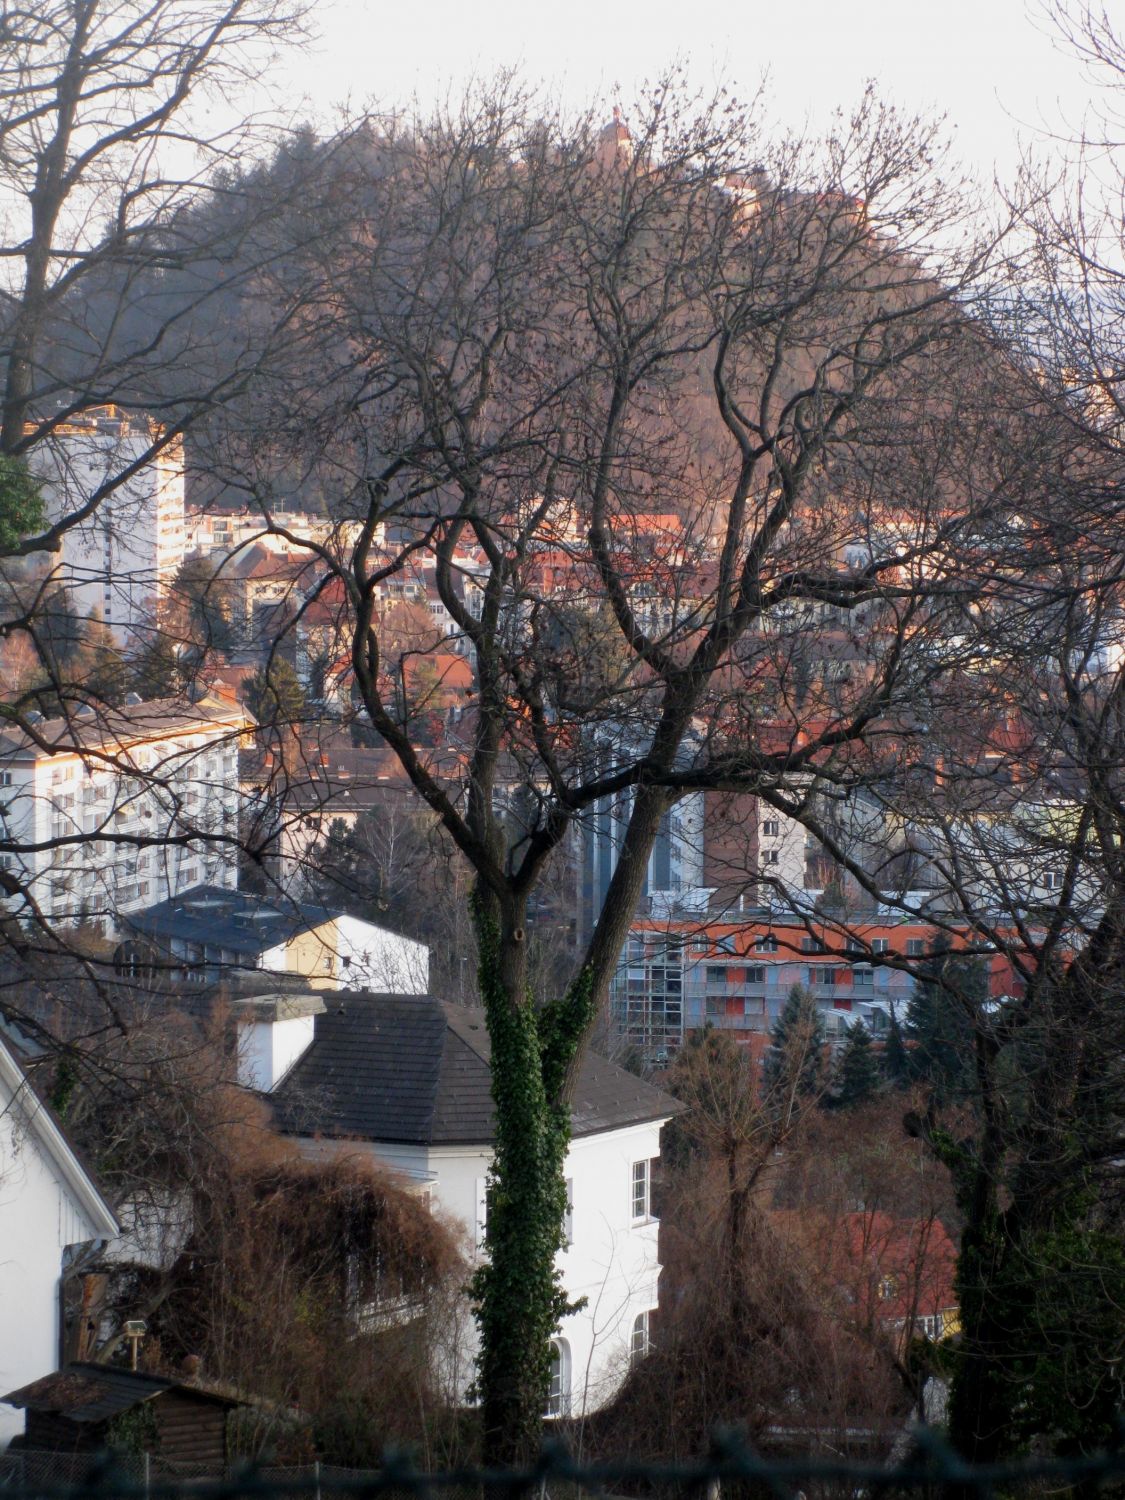 Blick vom Reinerkogel hinüber zum Grazer Schloßberg